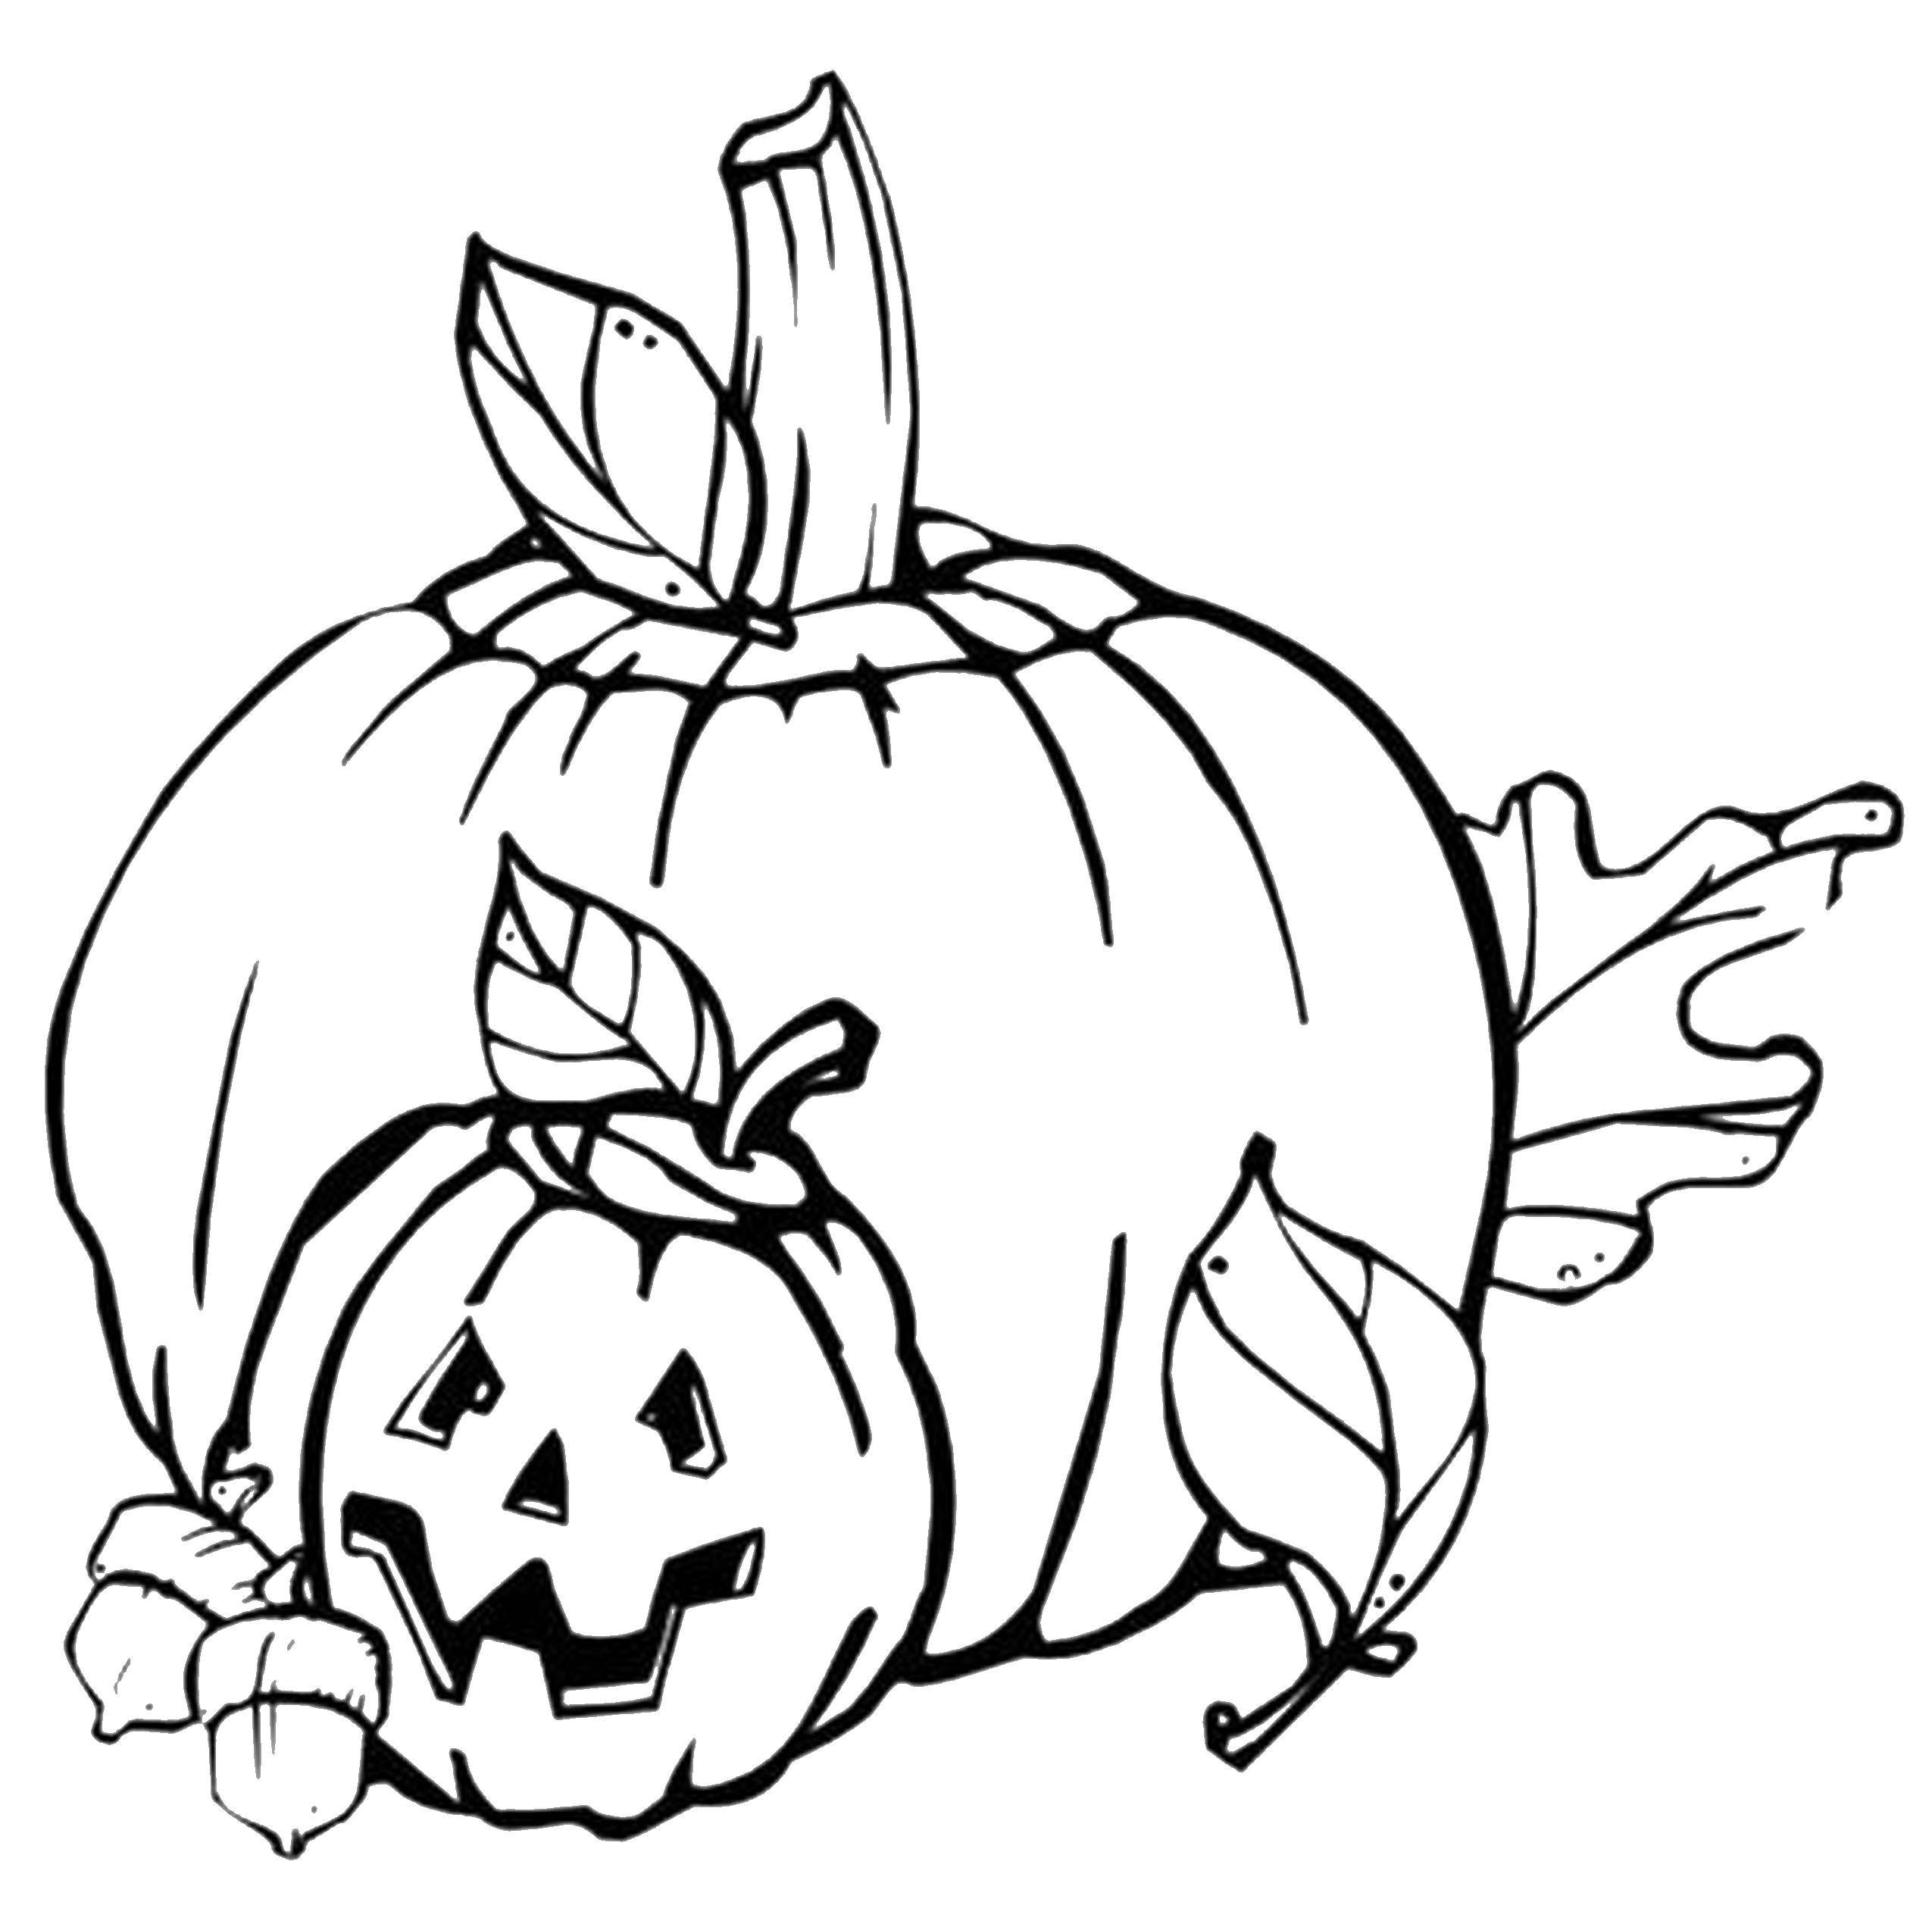 Название: Раскраска Тыквы. Категория: Хэллоуин. Теги: хэллоуин, осень, тыквы.